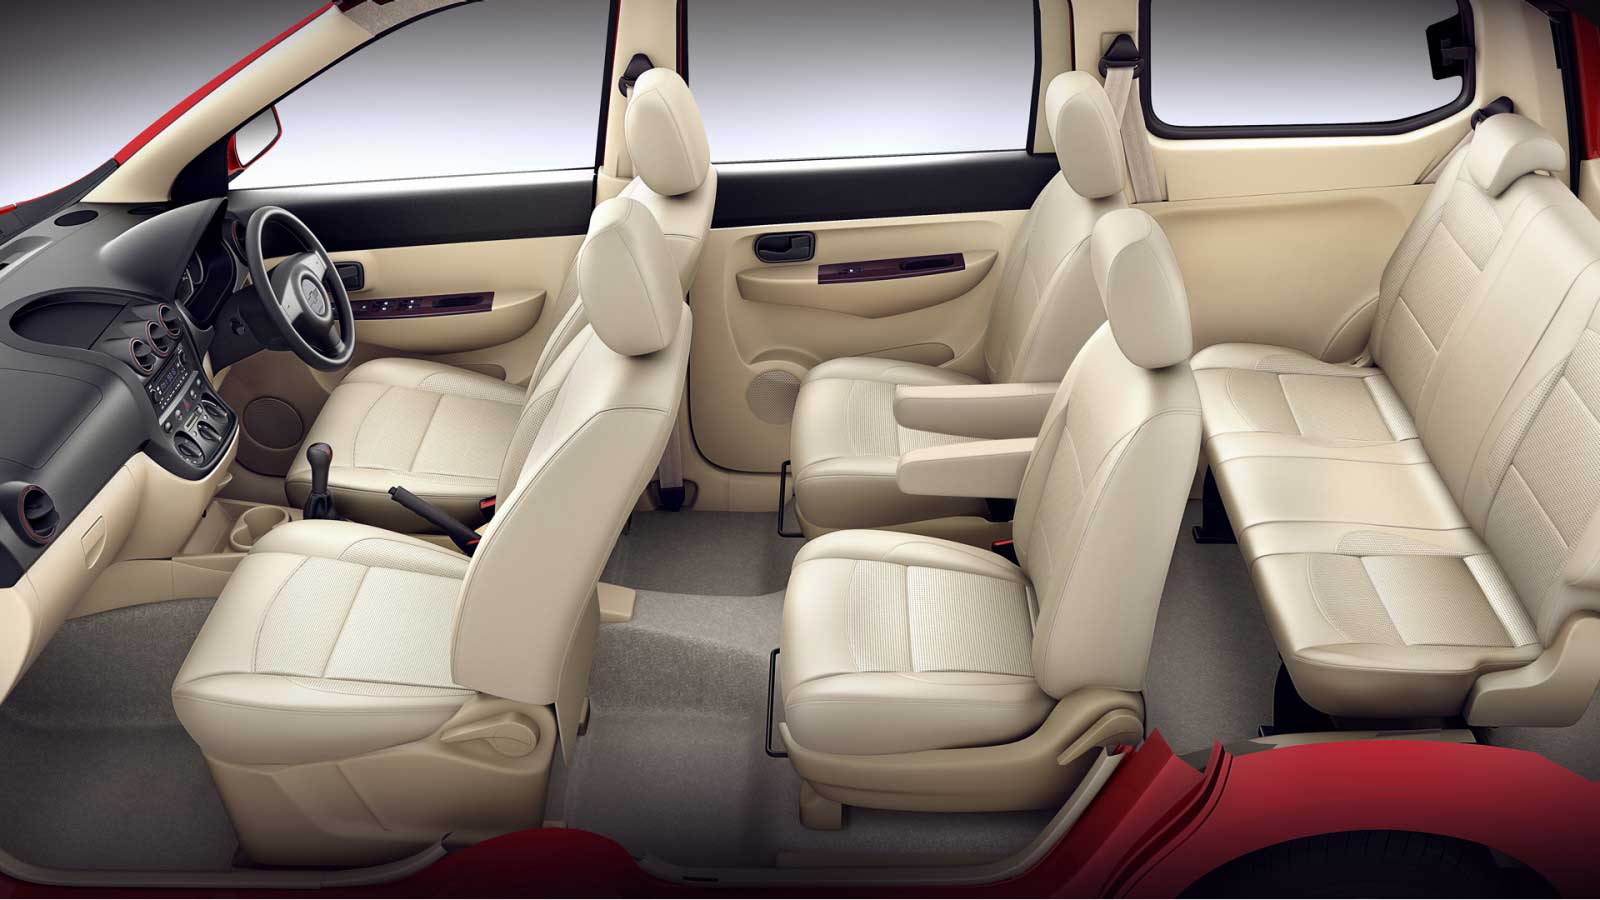 Chevrolet Enjoy 1.4 LTZ 7 STR Interior seats